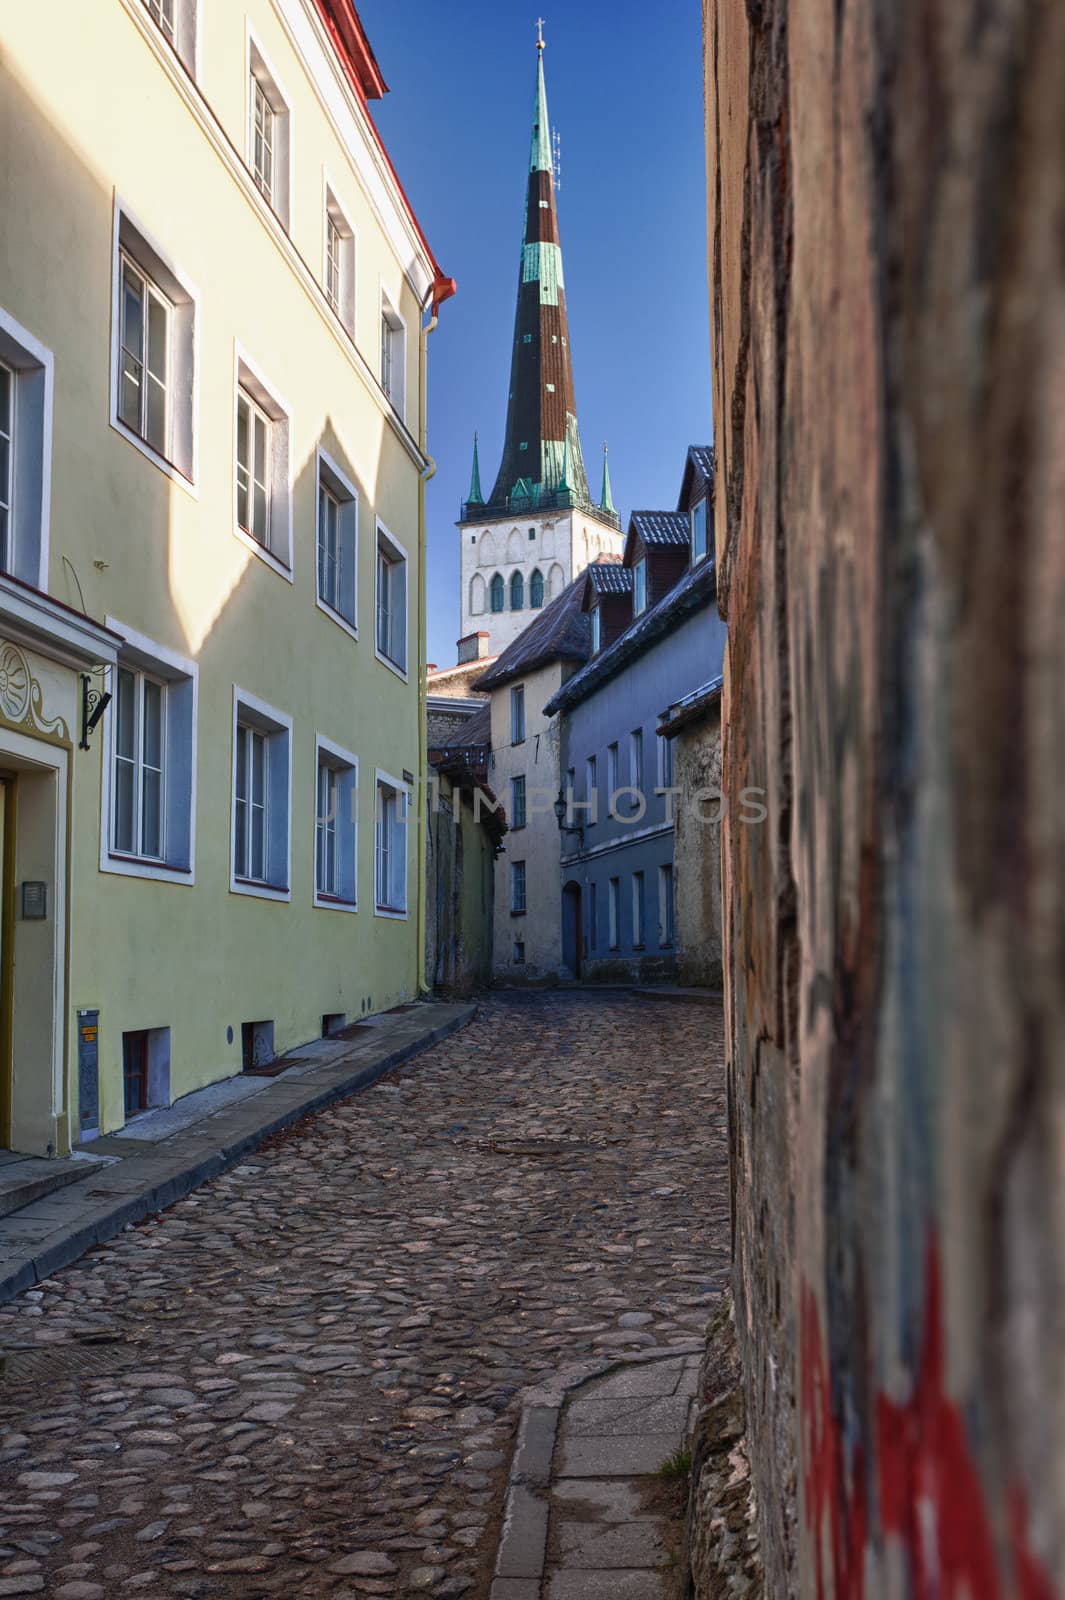 Old street in Tallinn by steheap